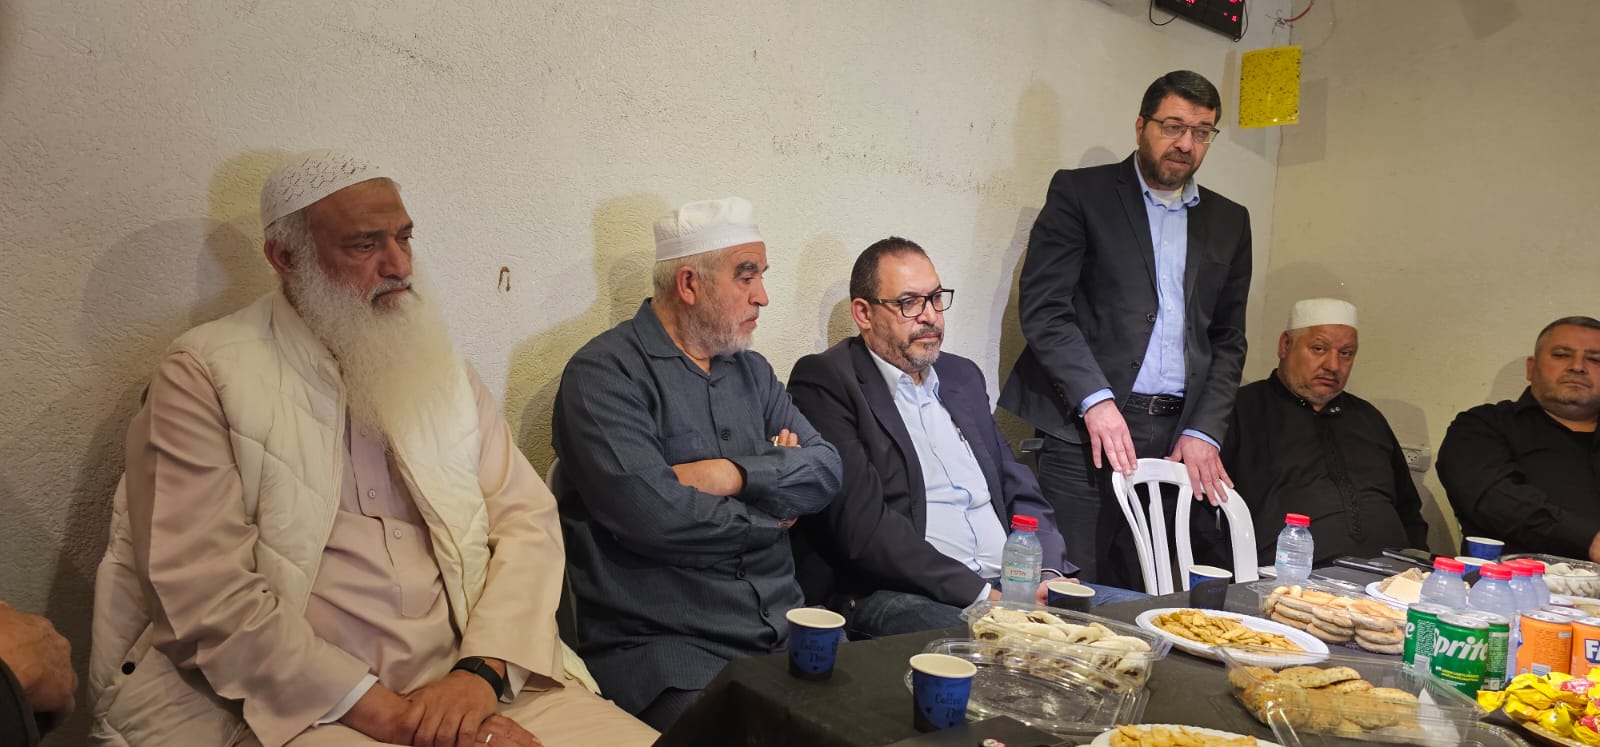  لجنة افشاء السلام تُهنئ أعضاء البلدية العرب في اللد والرملة 